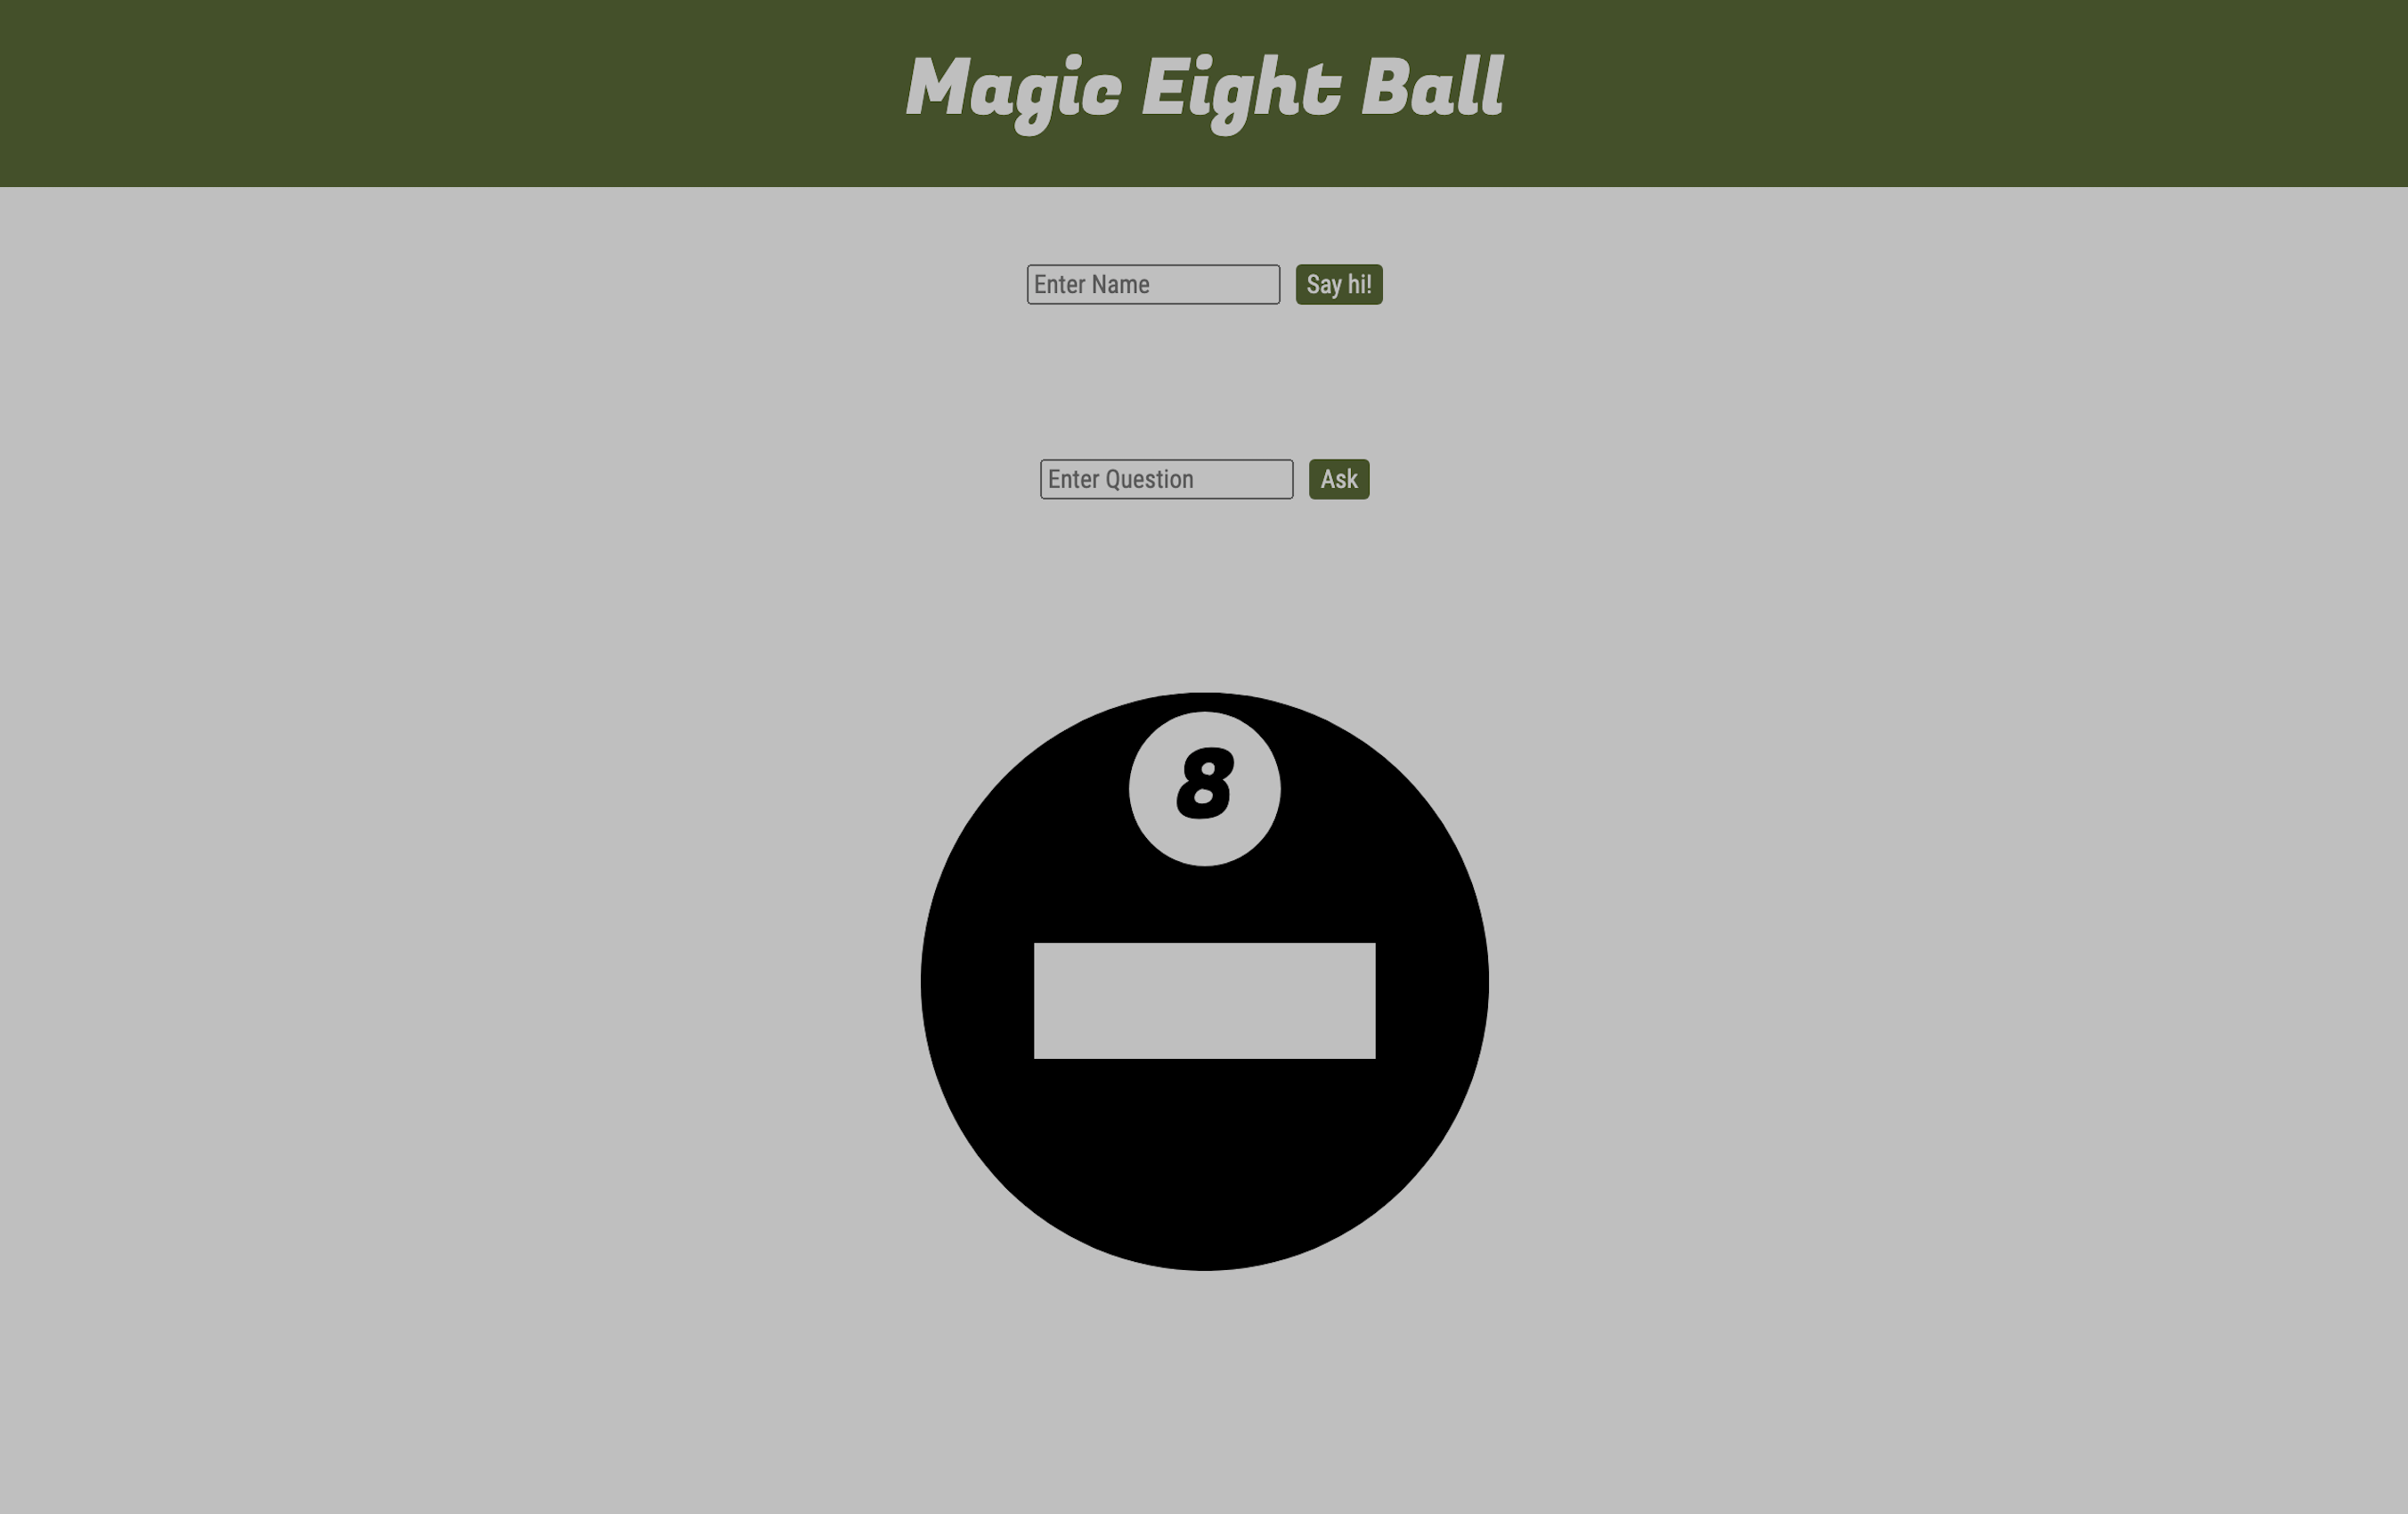 https://jboyle1.github.io/magic-eight-ball/